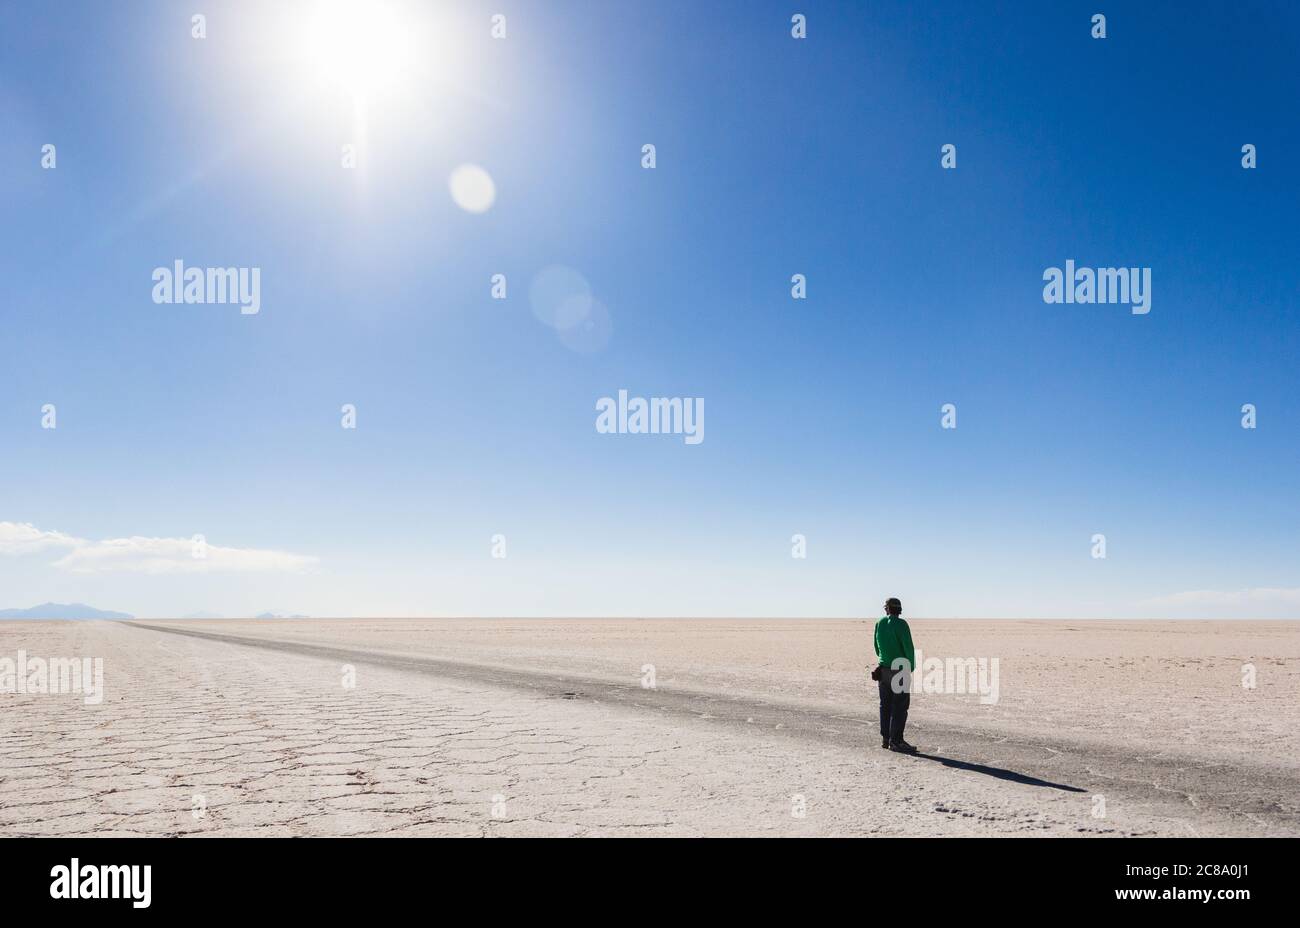 Strong sun in the salt desert, bolivia Stock Photo